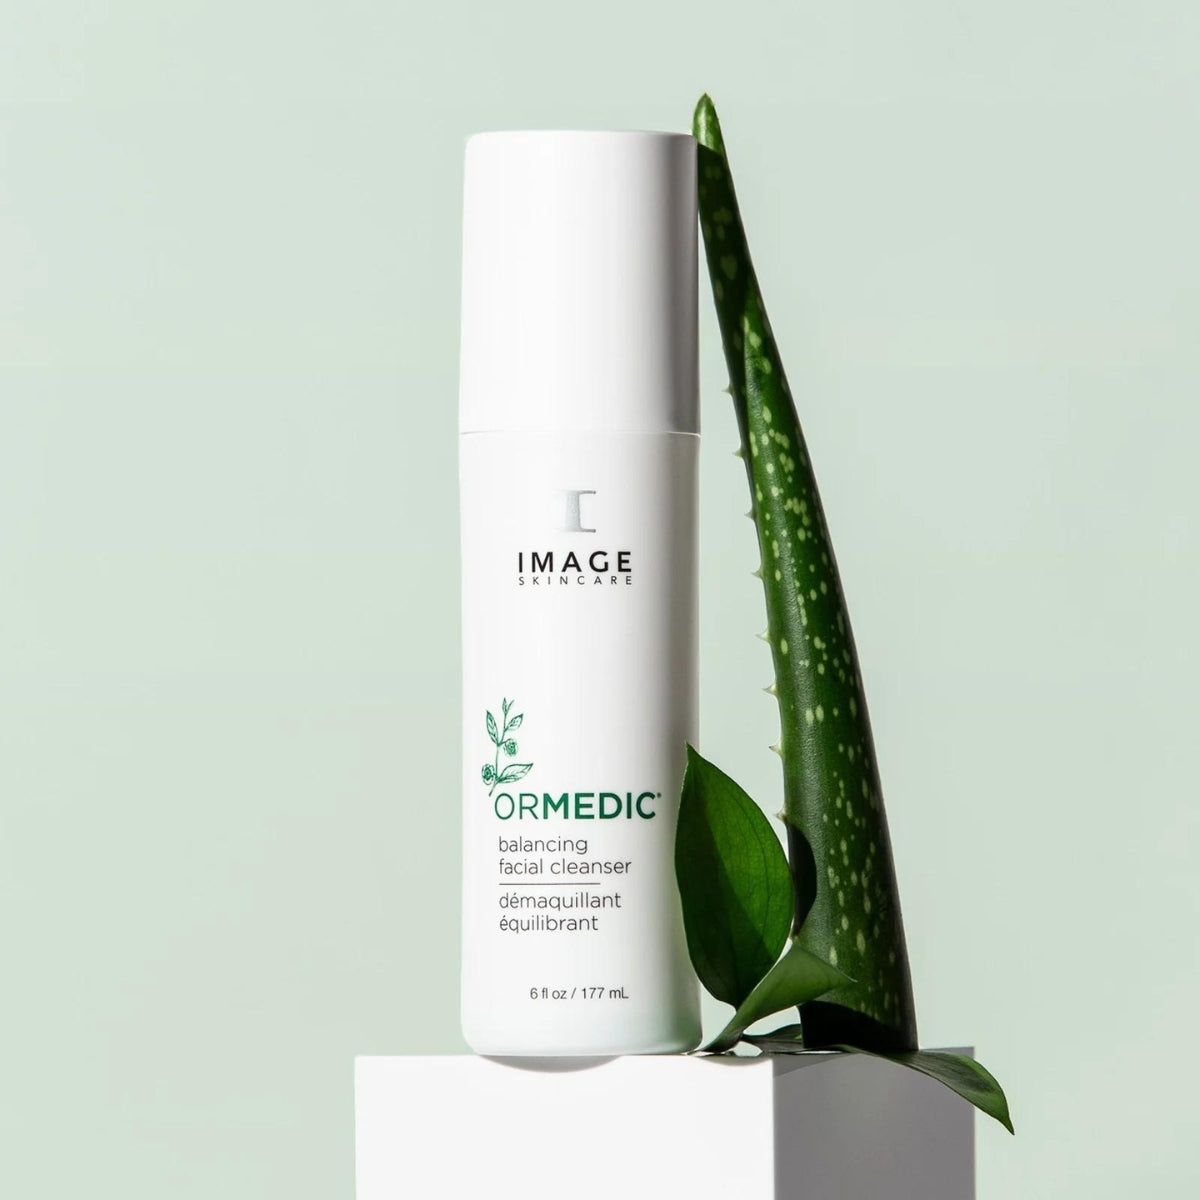 IMAGE Skincare Ormedic Balancing Facial Cleanser Original Formula